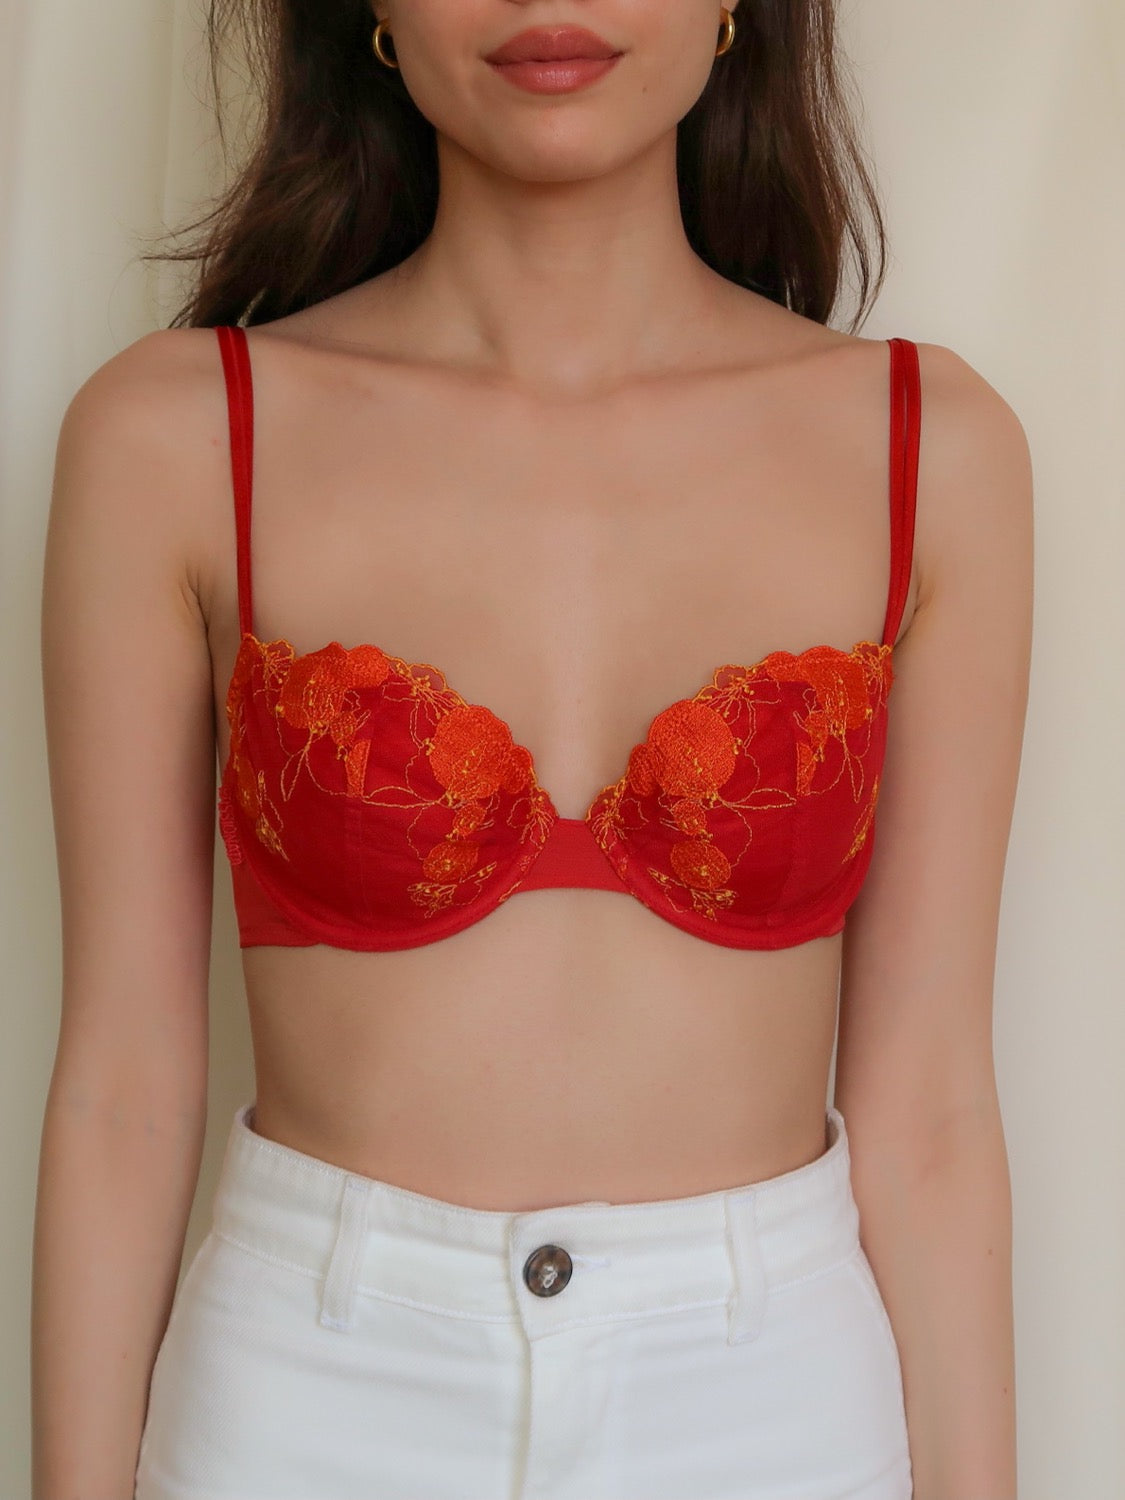 Victoria's secret Lace Bralette Size Small Red Bra Underwire